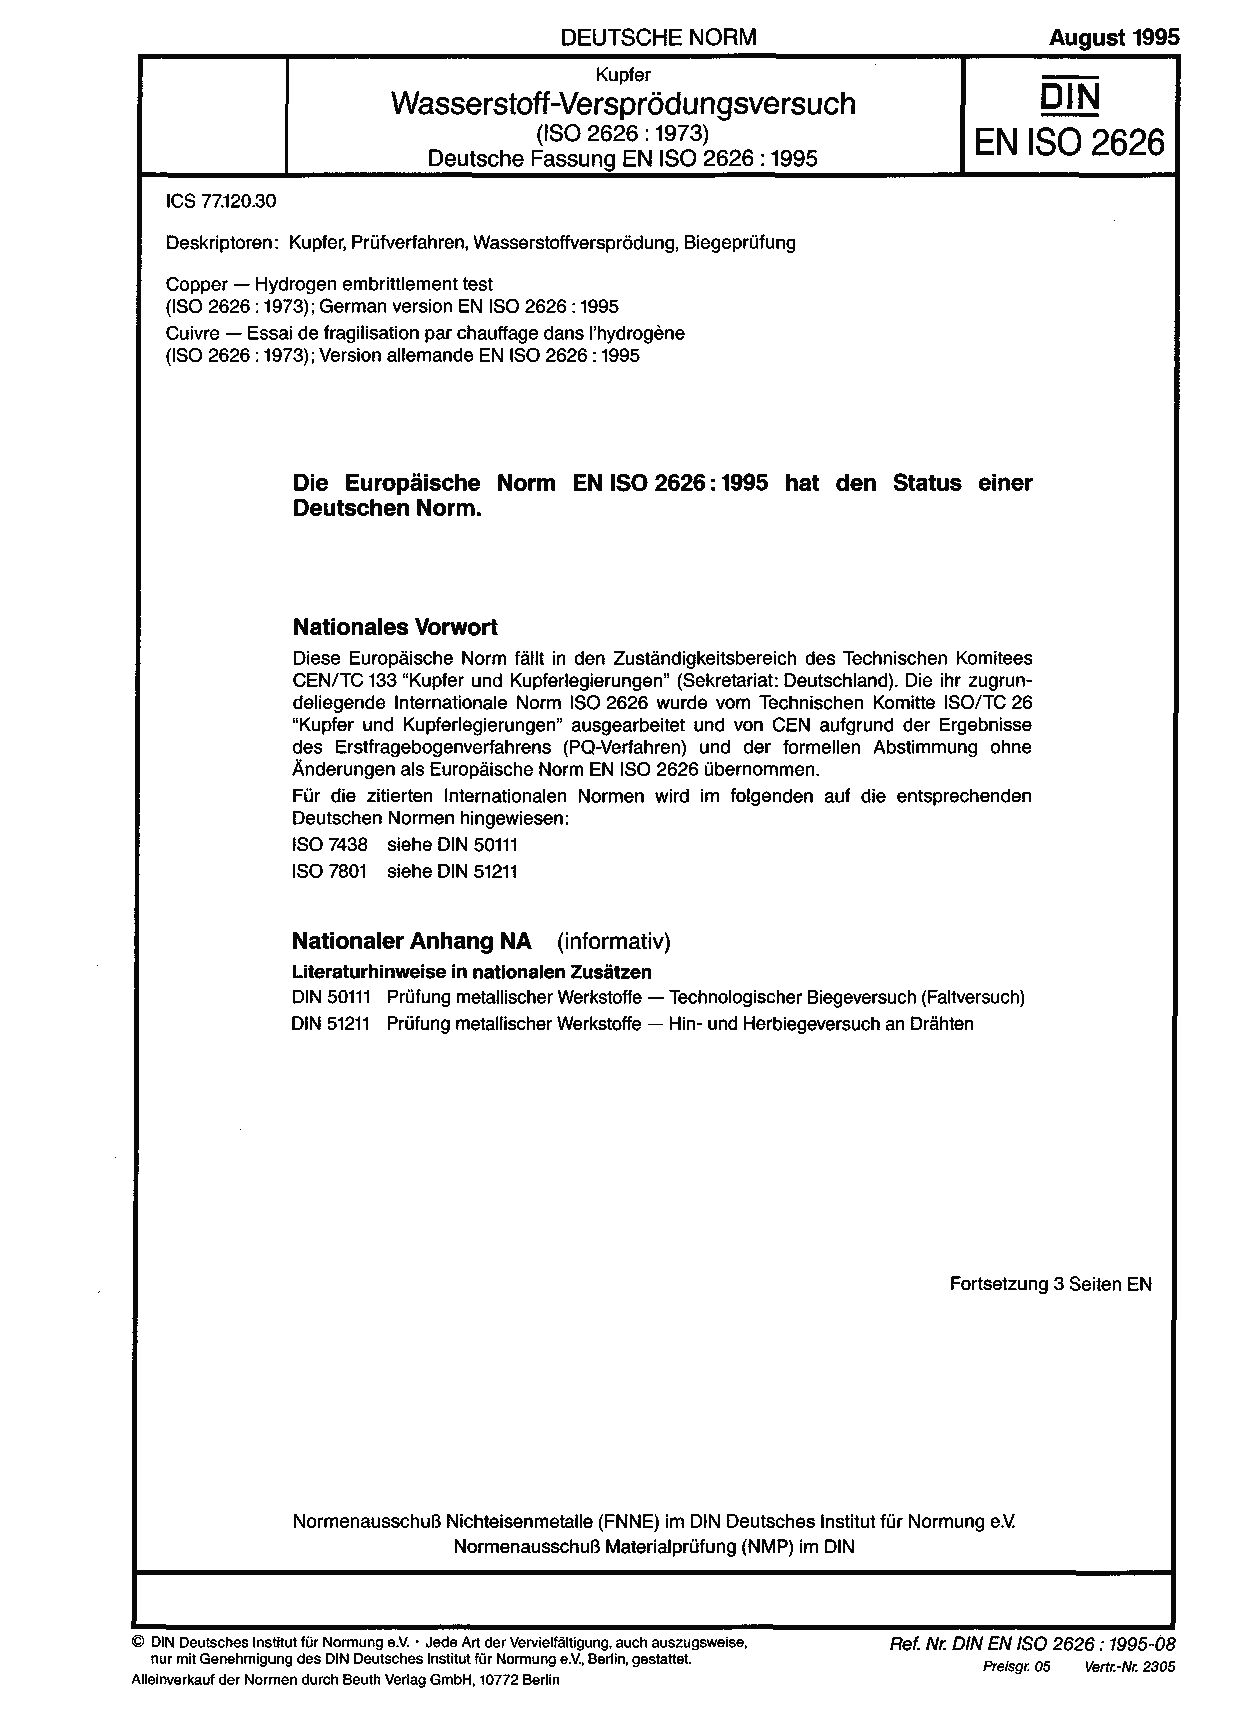 DIN EN ISO 2626:1995封面图